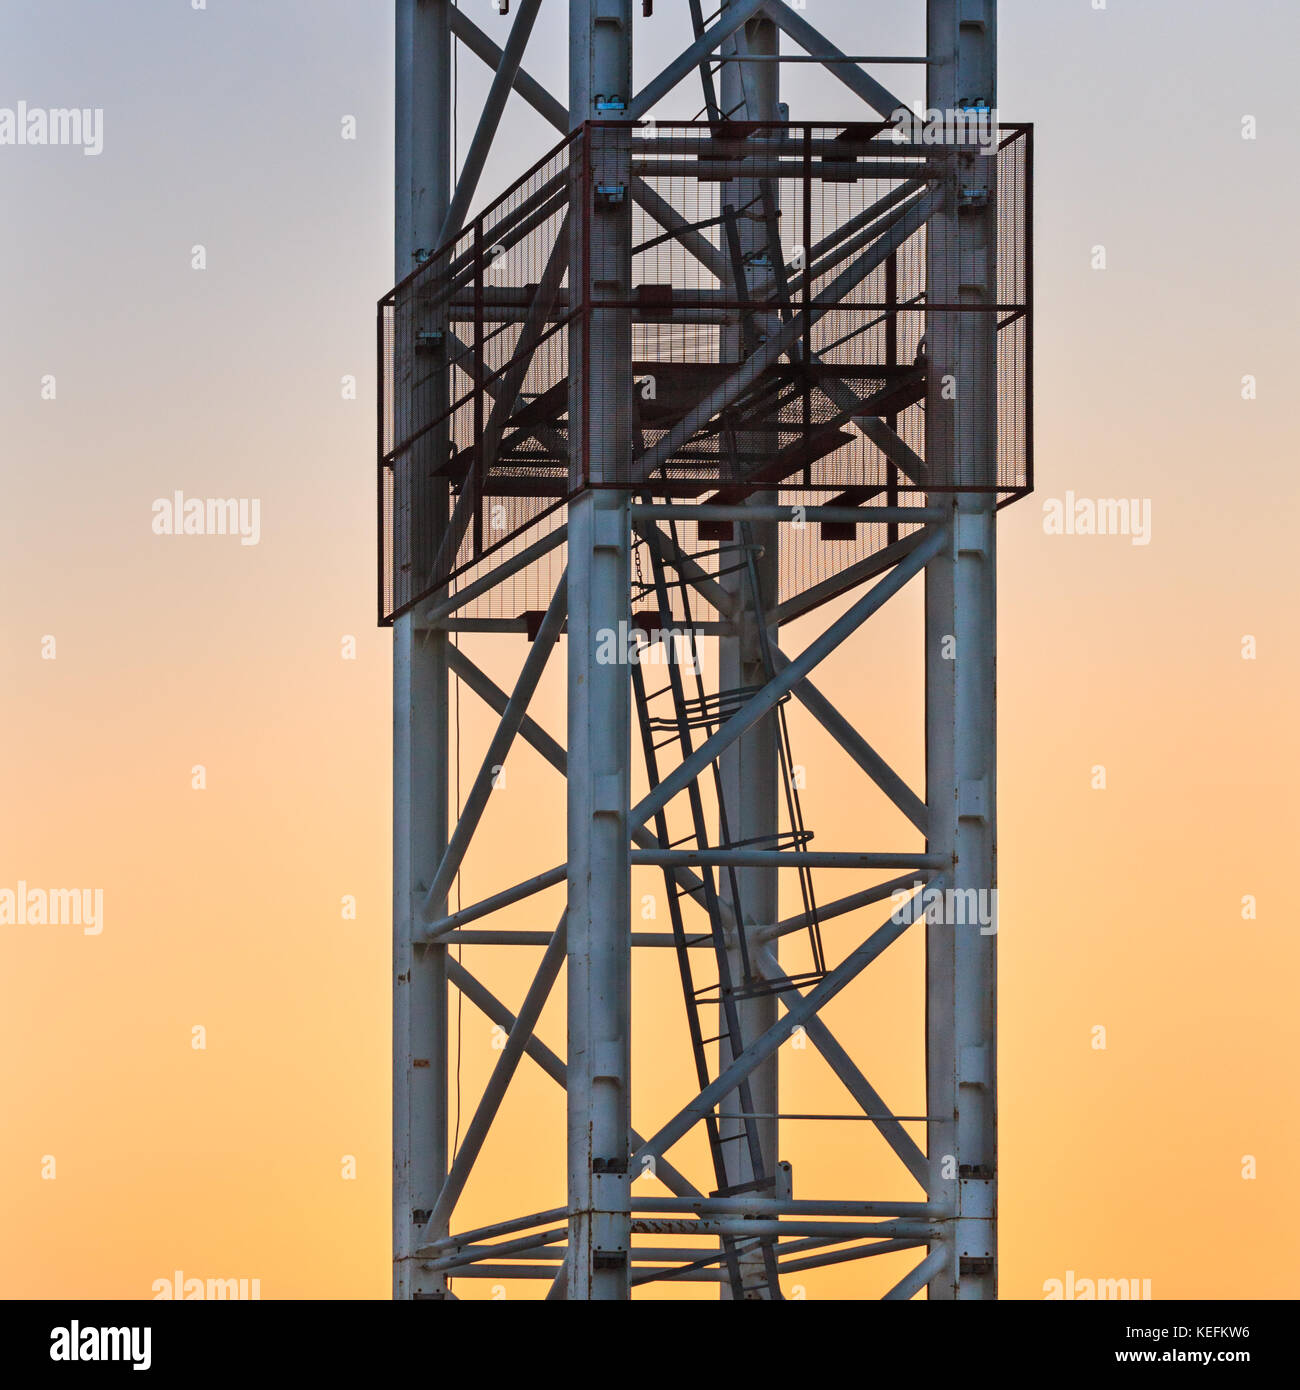 Detalle del mástil de la grúa de la torre disparado contra el cielo del atardecer Foto de stock